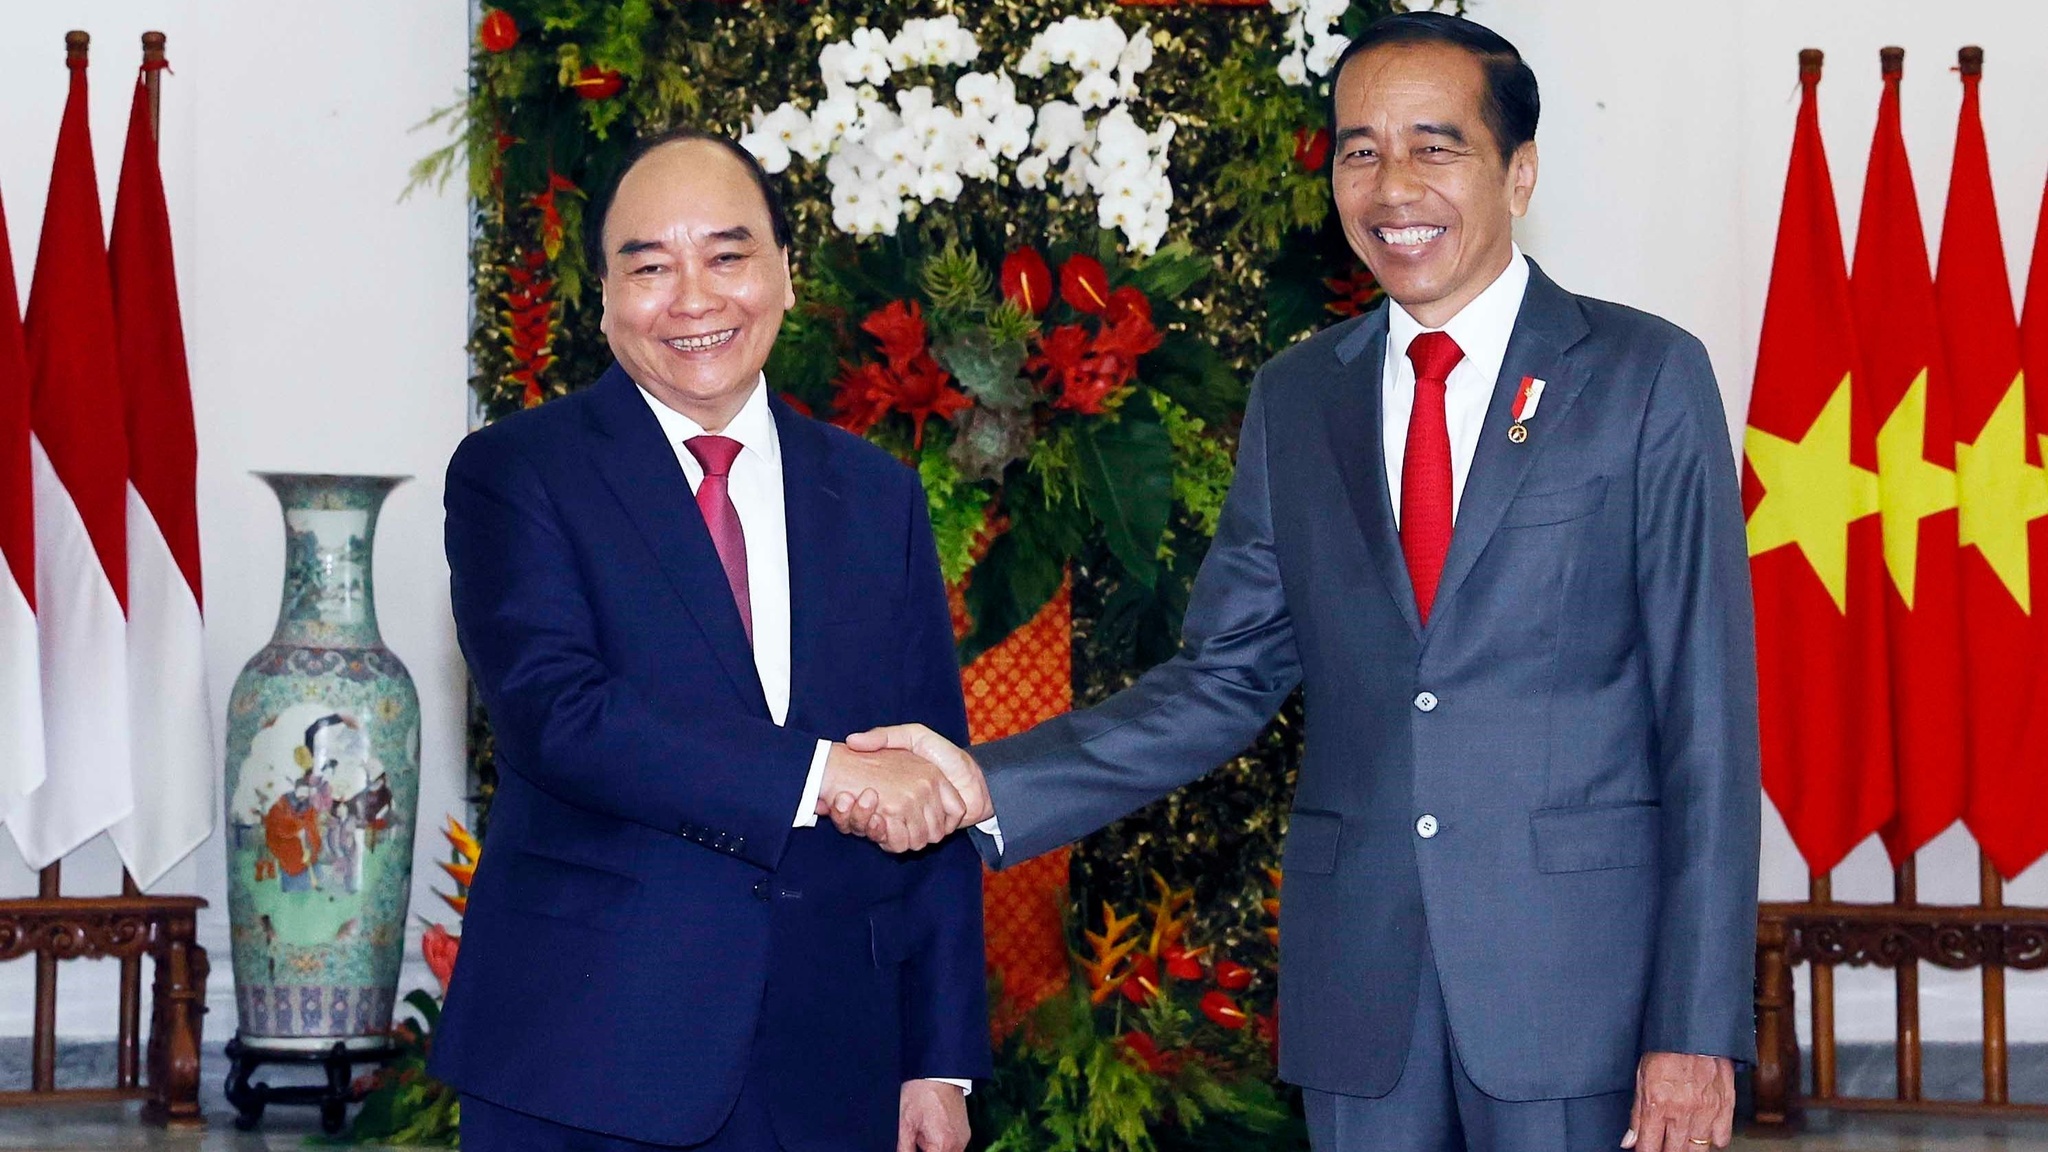 Sớm đưa kim ngạch thương mại Việt Nam - Indonesia lên 15 tỉ USD - ảnh 1